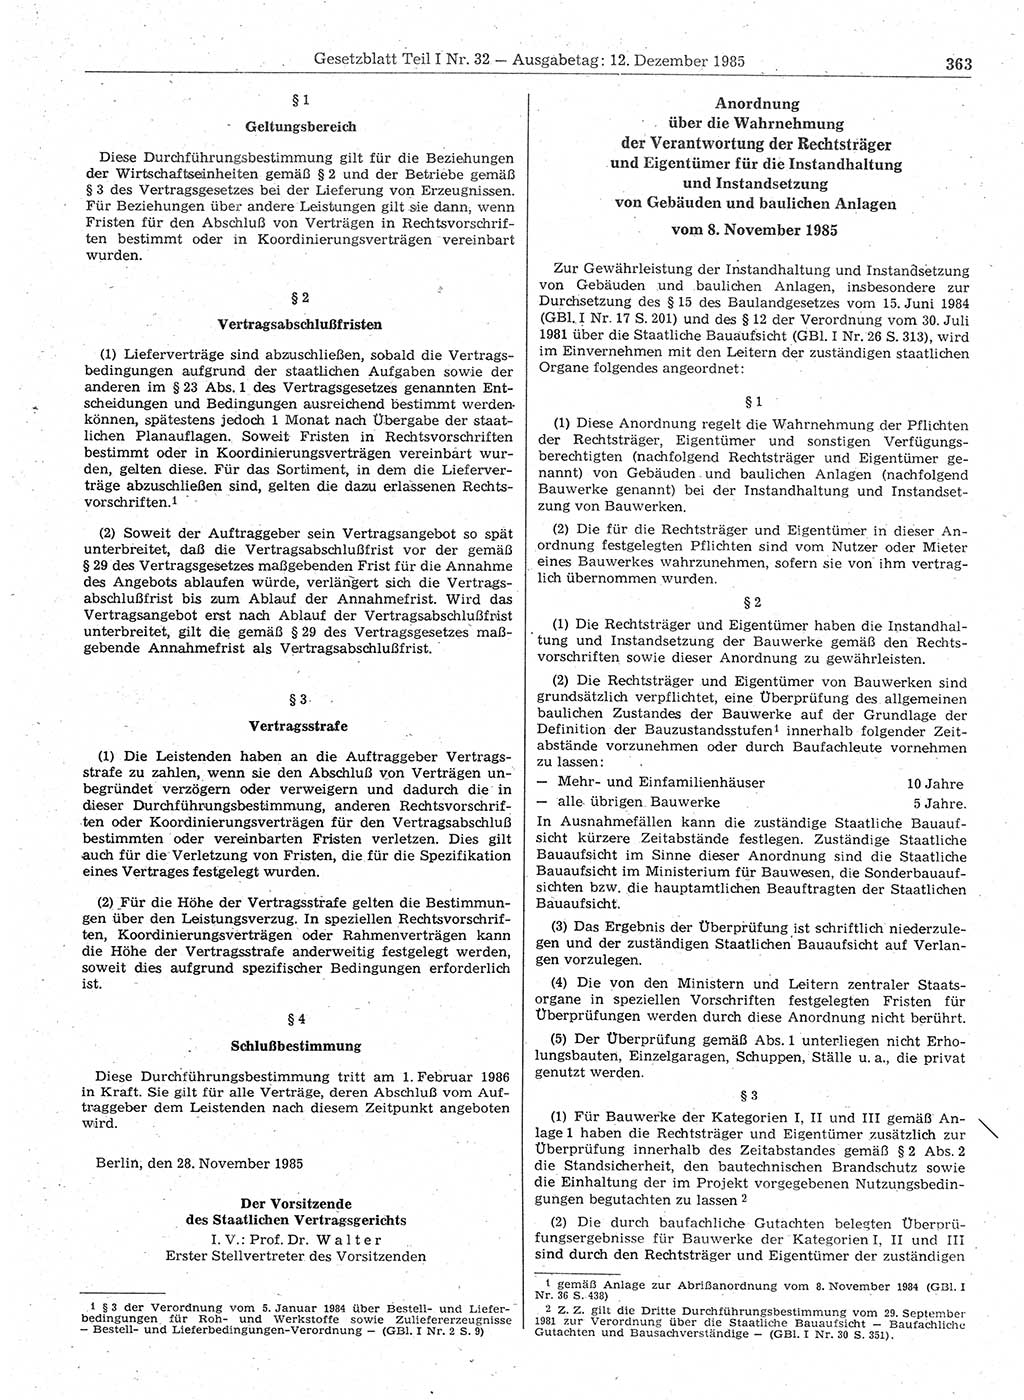 Gesetzblatt (GBl.) der Deutschen Demokratischen Republik (DDR) Teil Ⅰ 1985, Seite 363 (GBl. DDR Ⅰ 1985, S. 363)